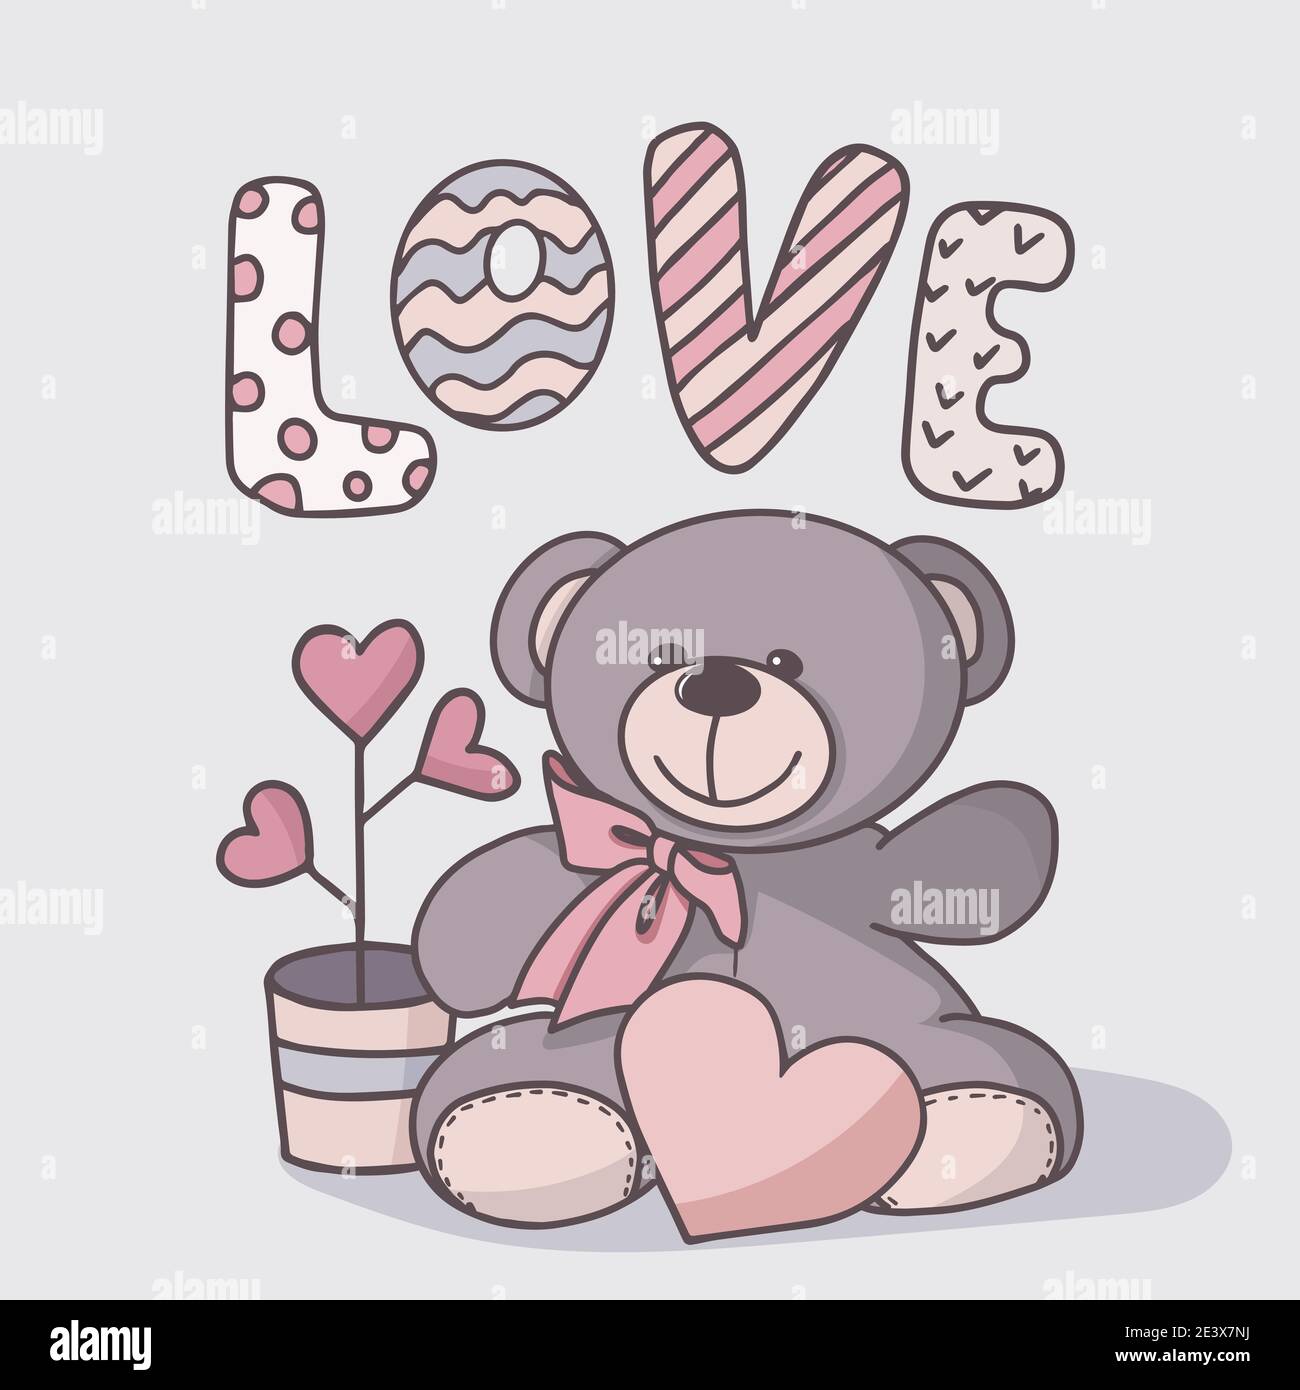 Vektor handgezeichnete Illustration eines niedlichen Teddybären. Grußkarte für Valentinstag, Geburtstag, Feiertag. Doodle. Stock Vektor